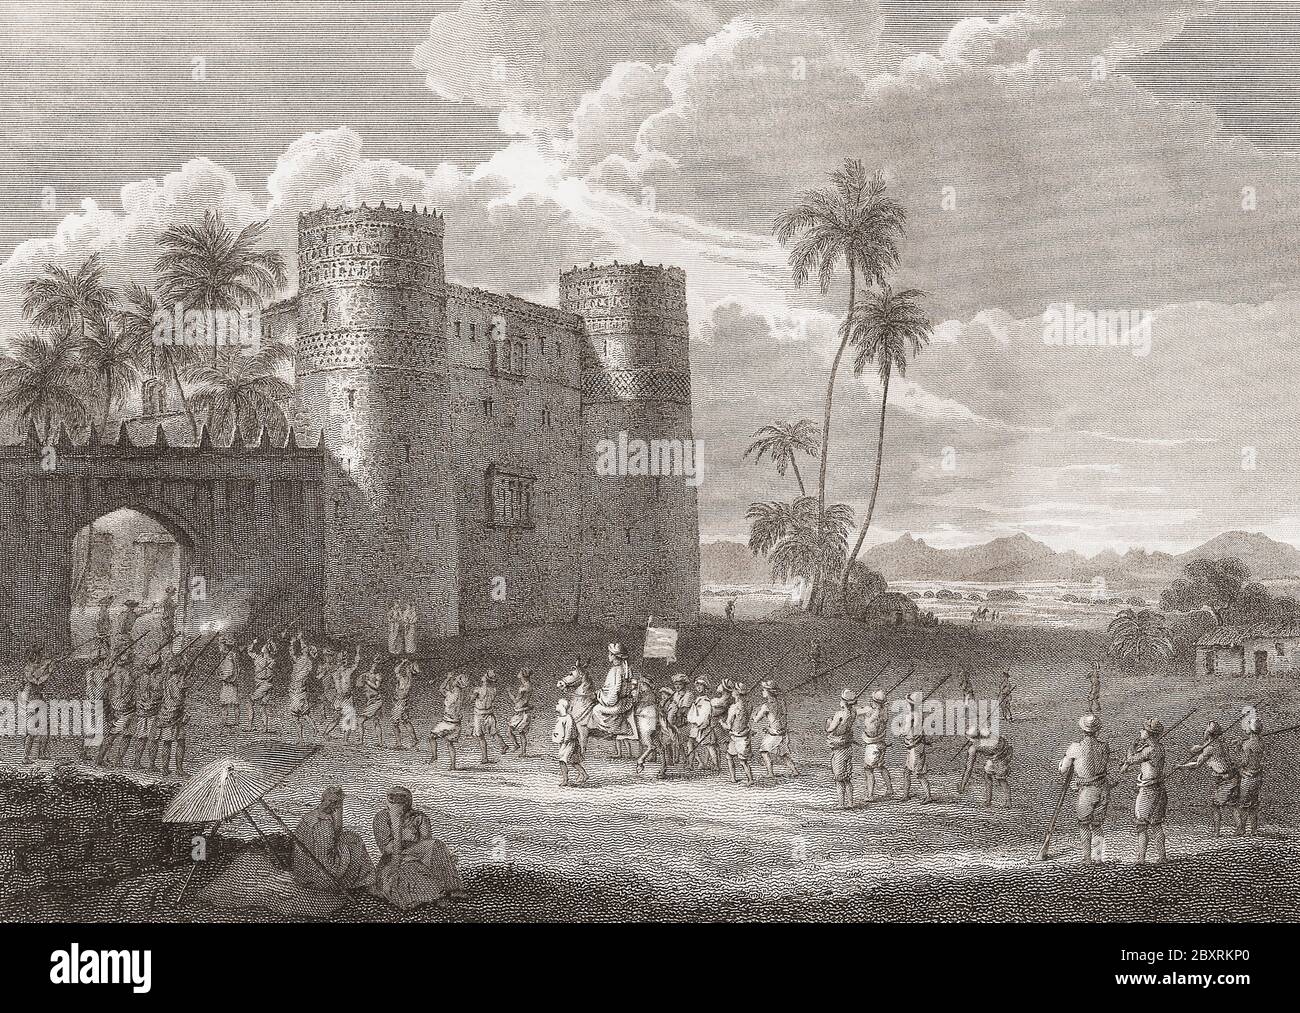 Burg des Sultans von Aden in Lahej, Sultanat von Lahej, im frühen 19. Jahrhundert. Nach einem Stich von Charles Heath aus einem Werk von Henry Salt. Stockfoto